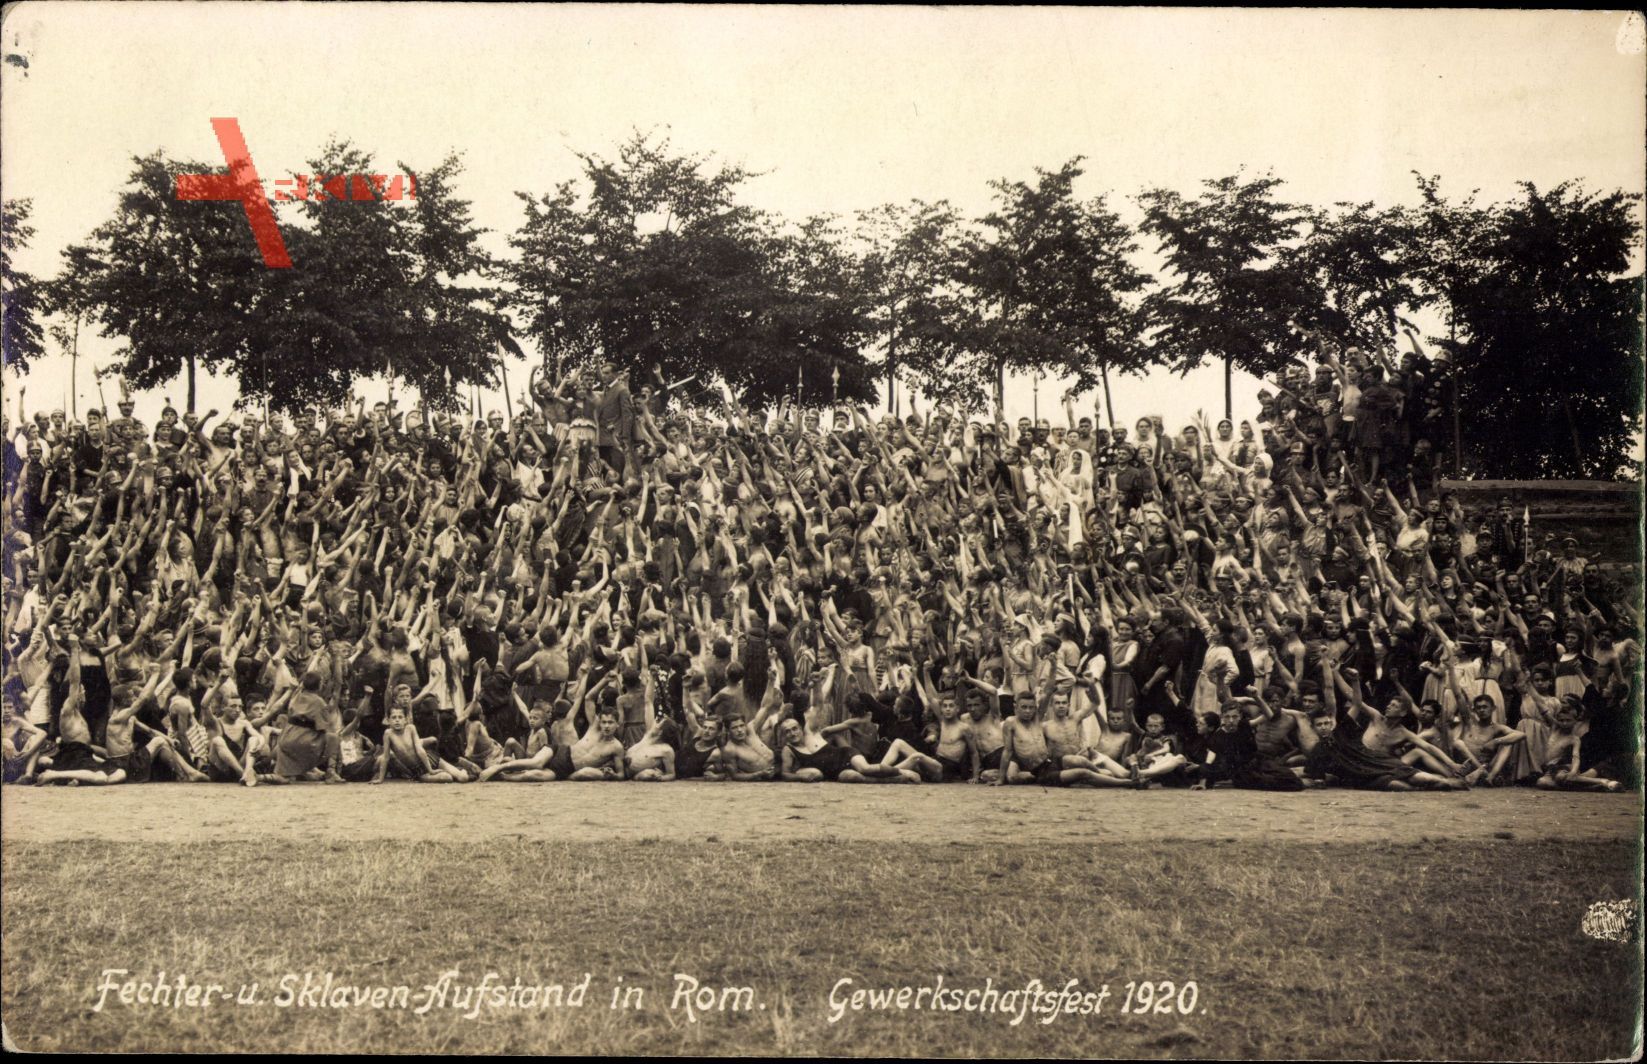 Fechter und Sklavenaufstand in Rom, Gewerkschaftsfest 1920